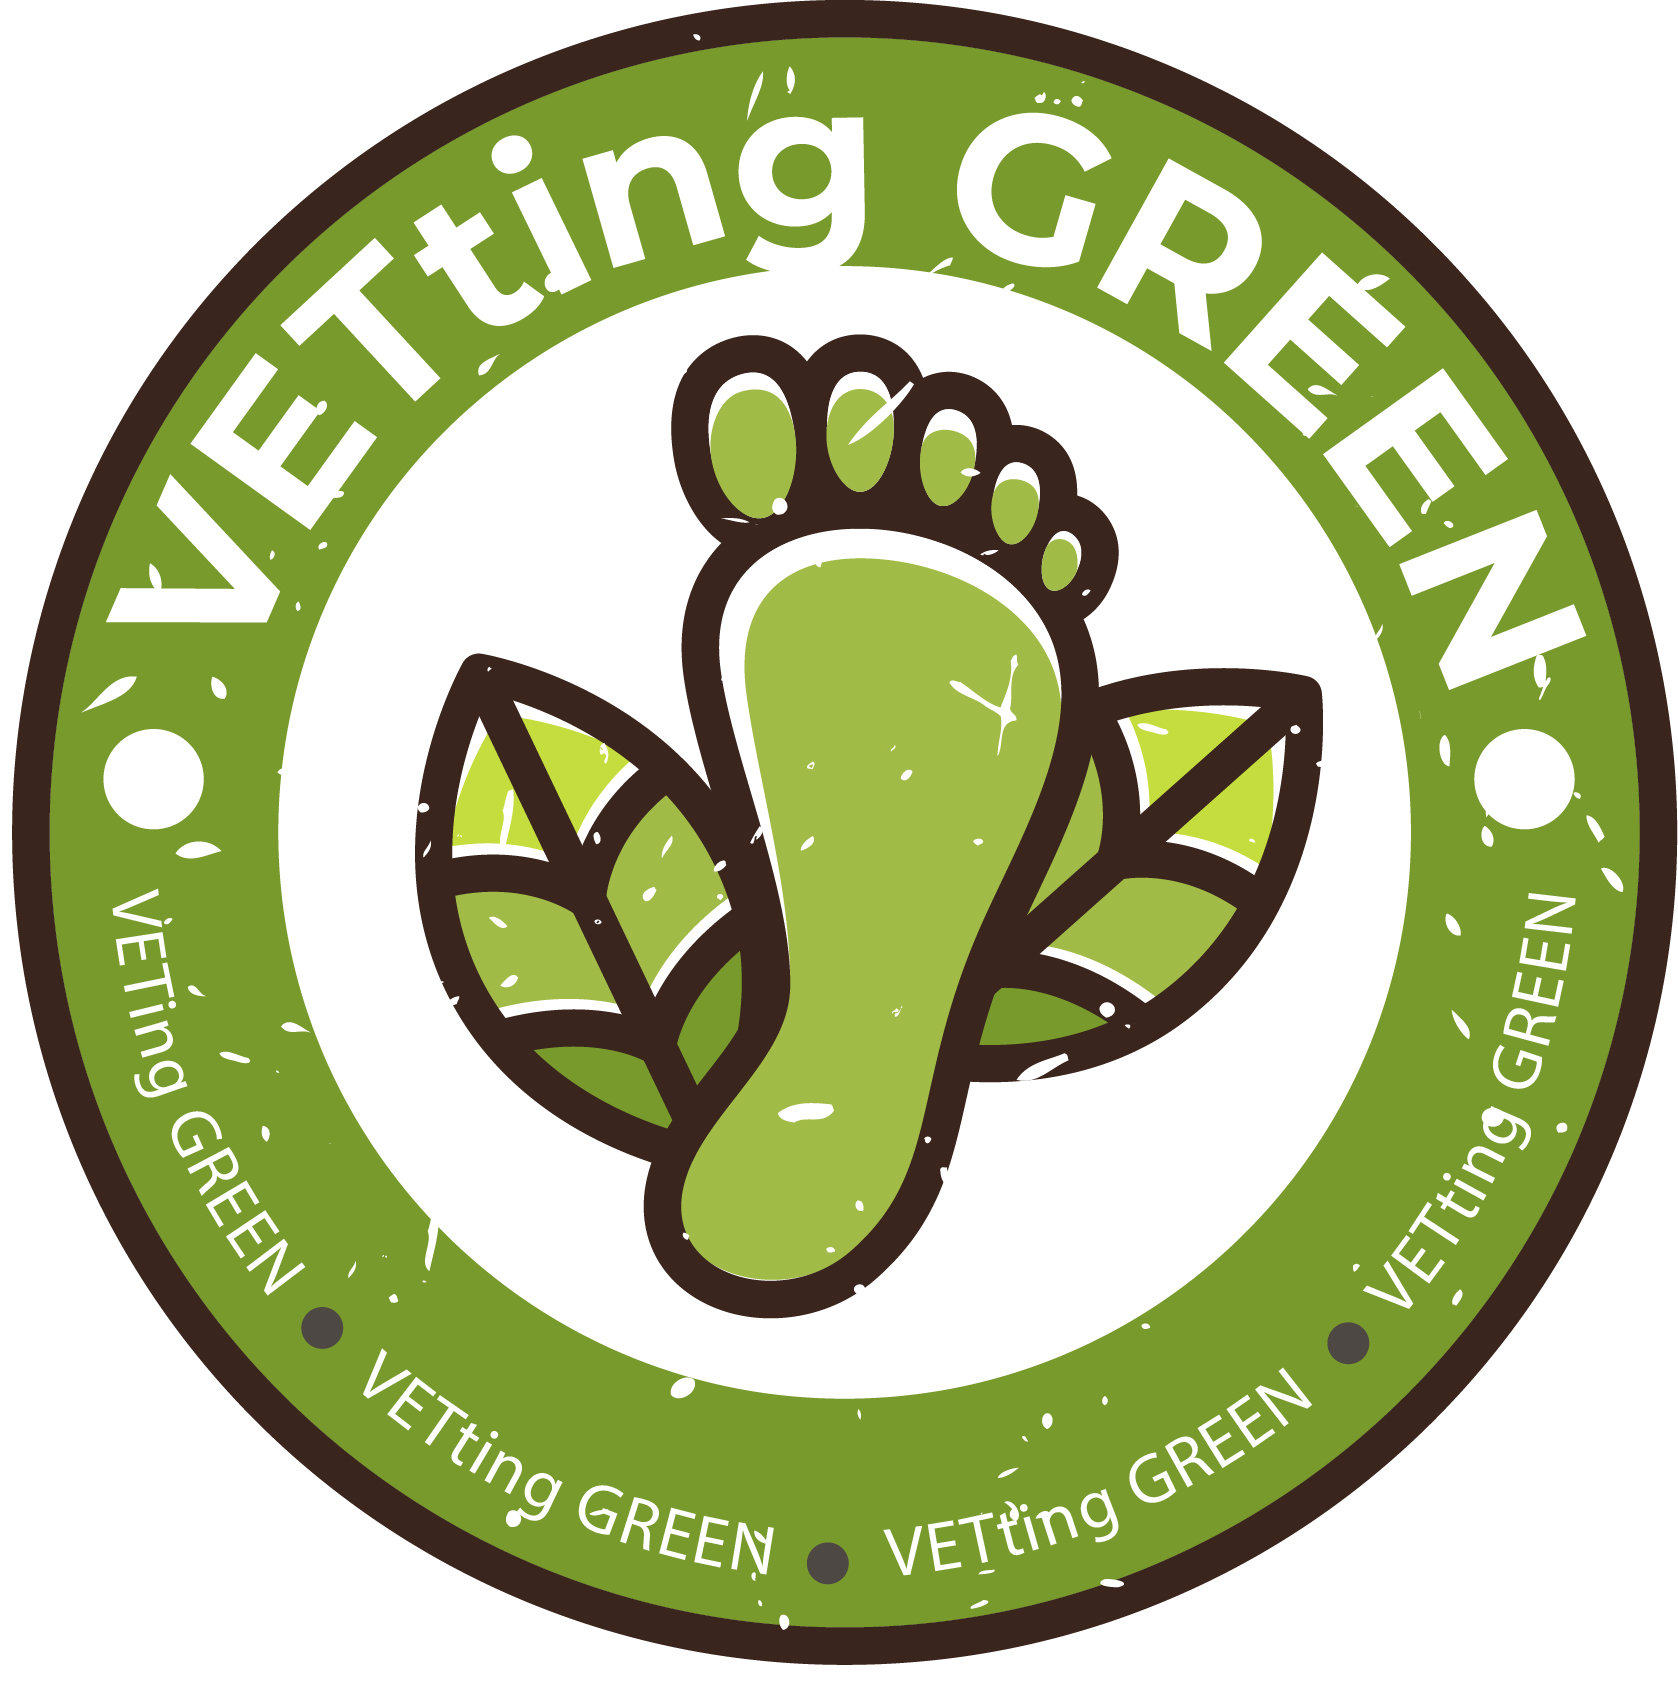 VETing Green - Formação Profissional para a Indústria de Calçado e Têxteis em Observação e Orientação contra o Greenwashing